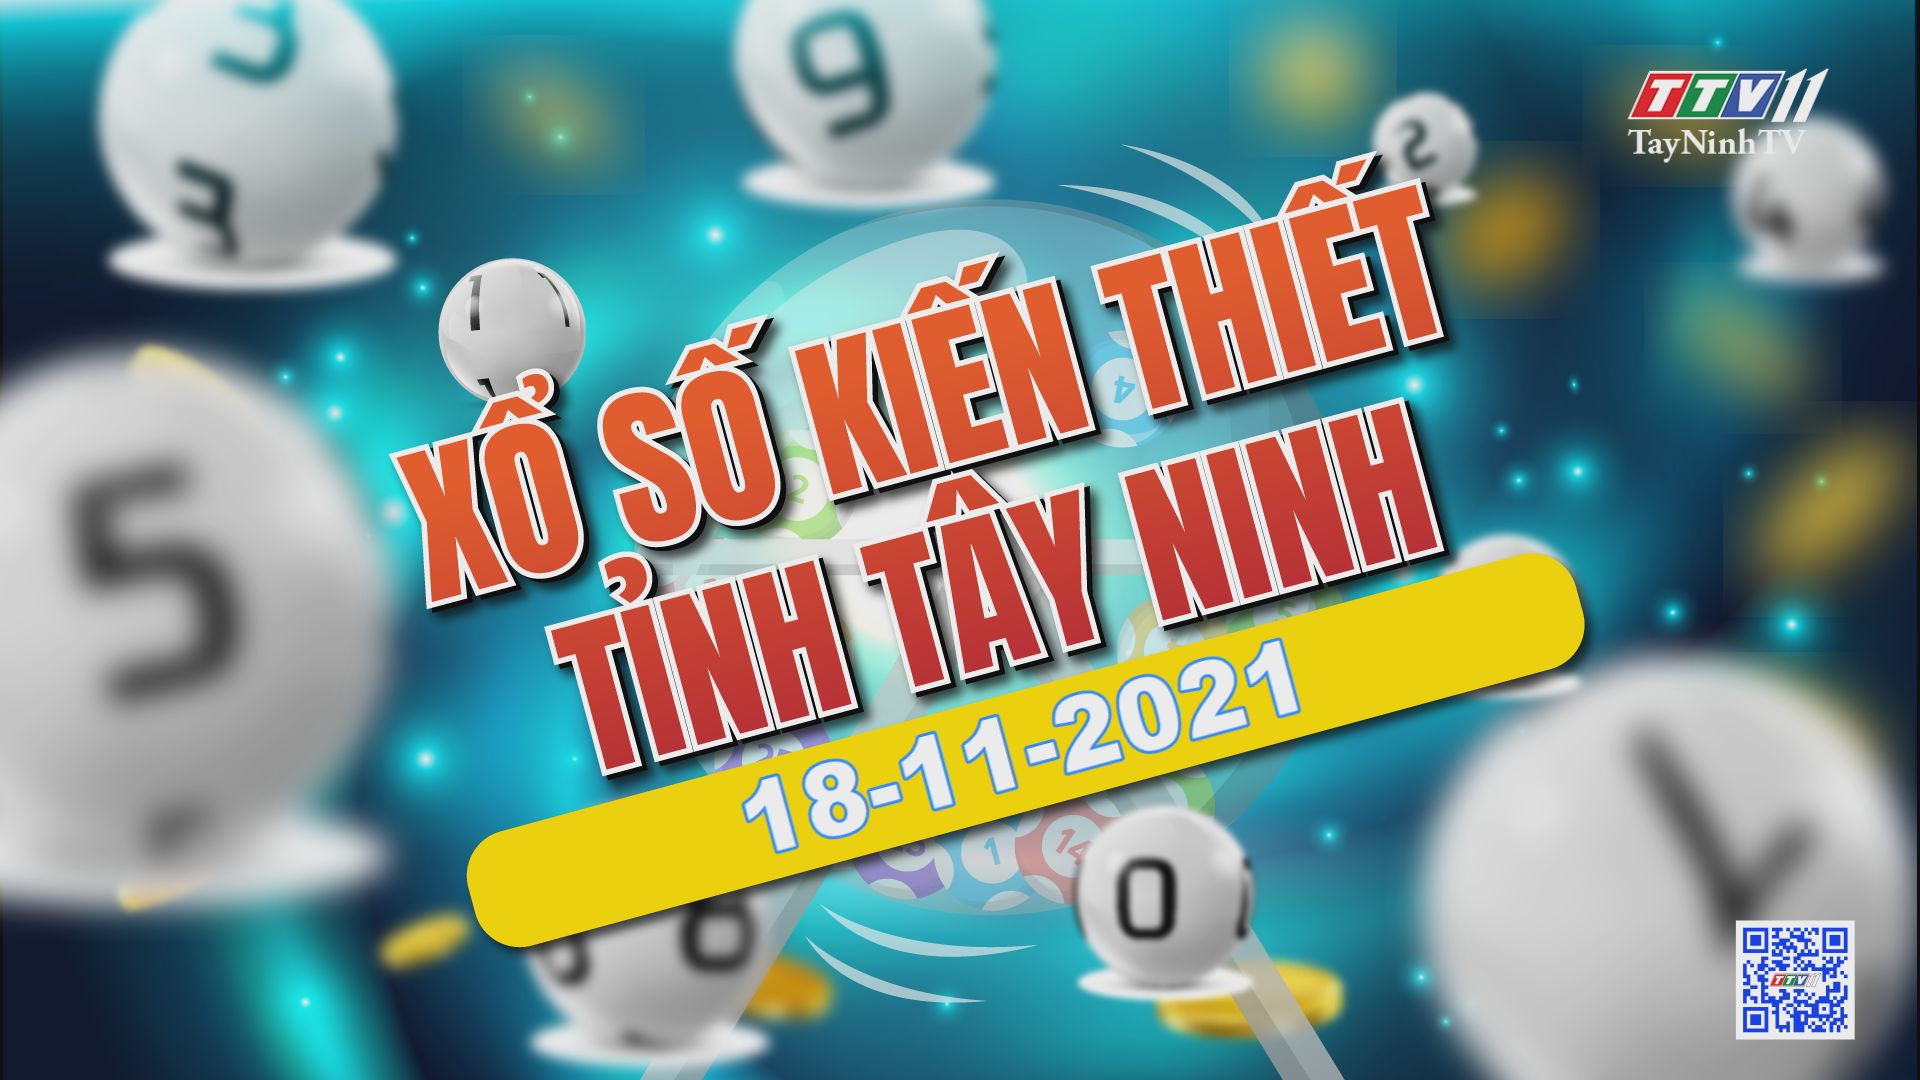 Trực tiếp Xổ số Tây Ninh ngày 18-11-2021 | TayNinhTVE